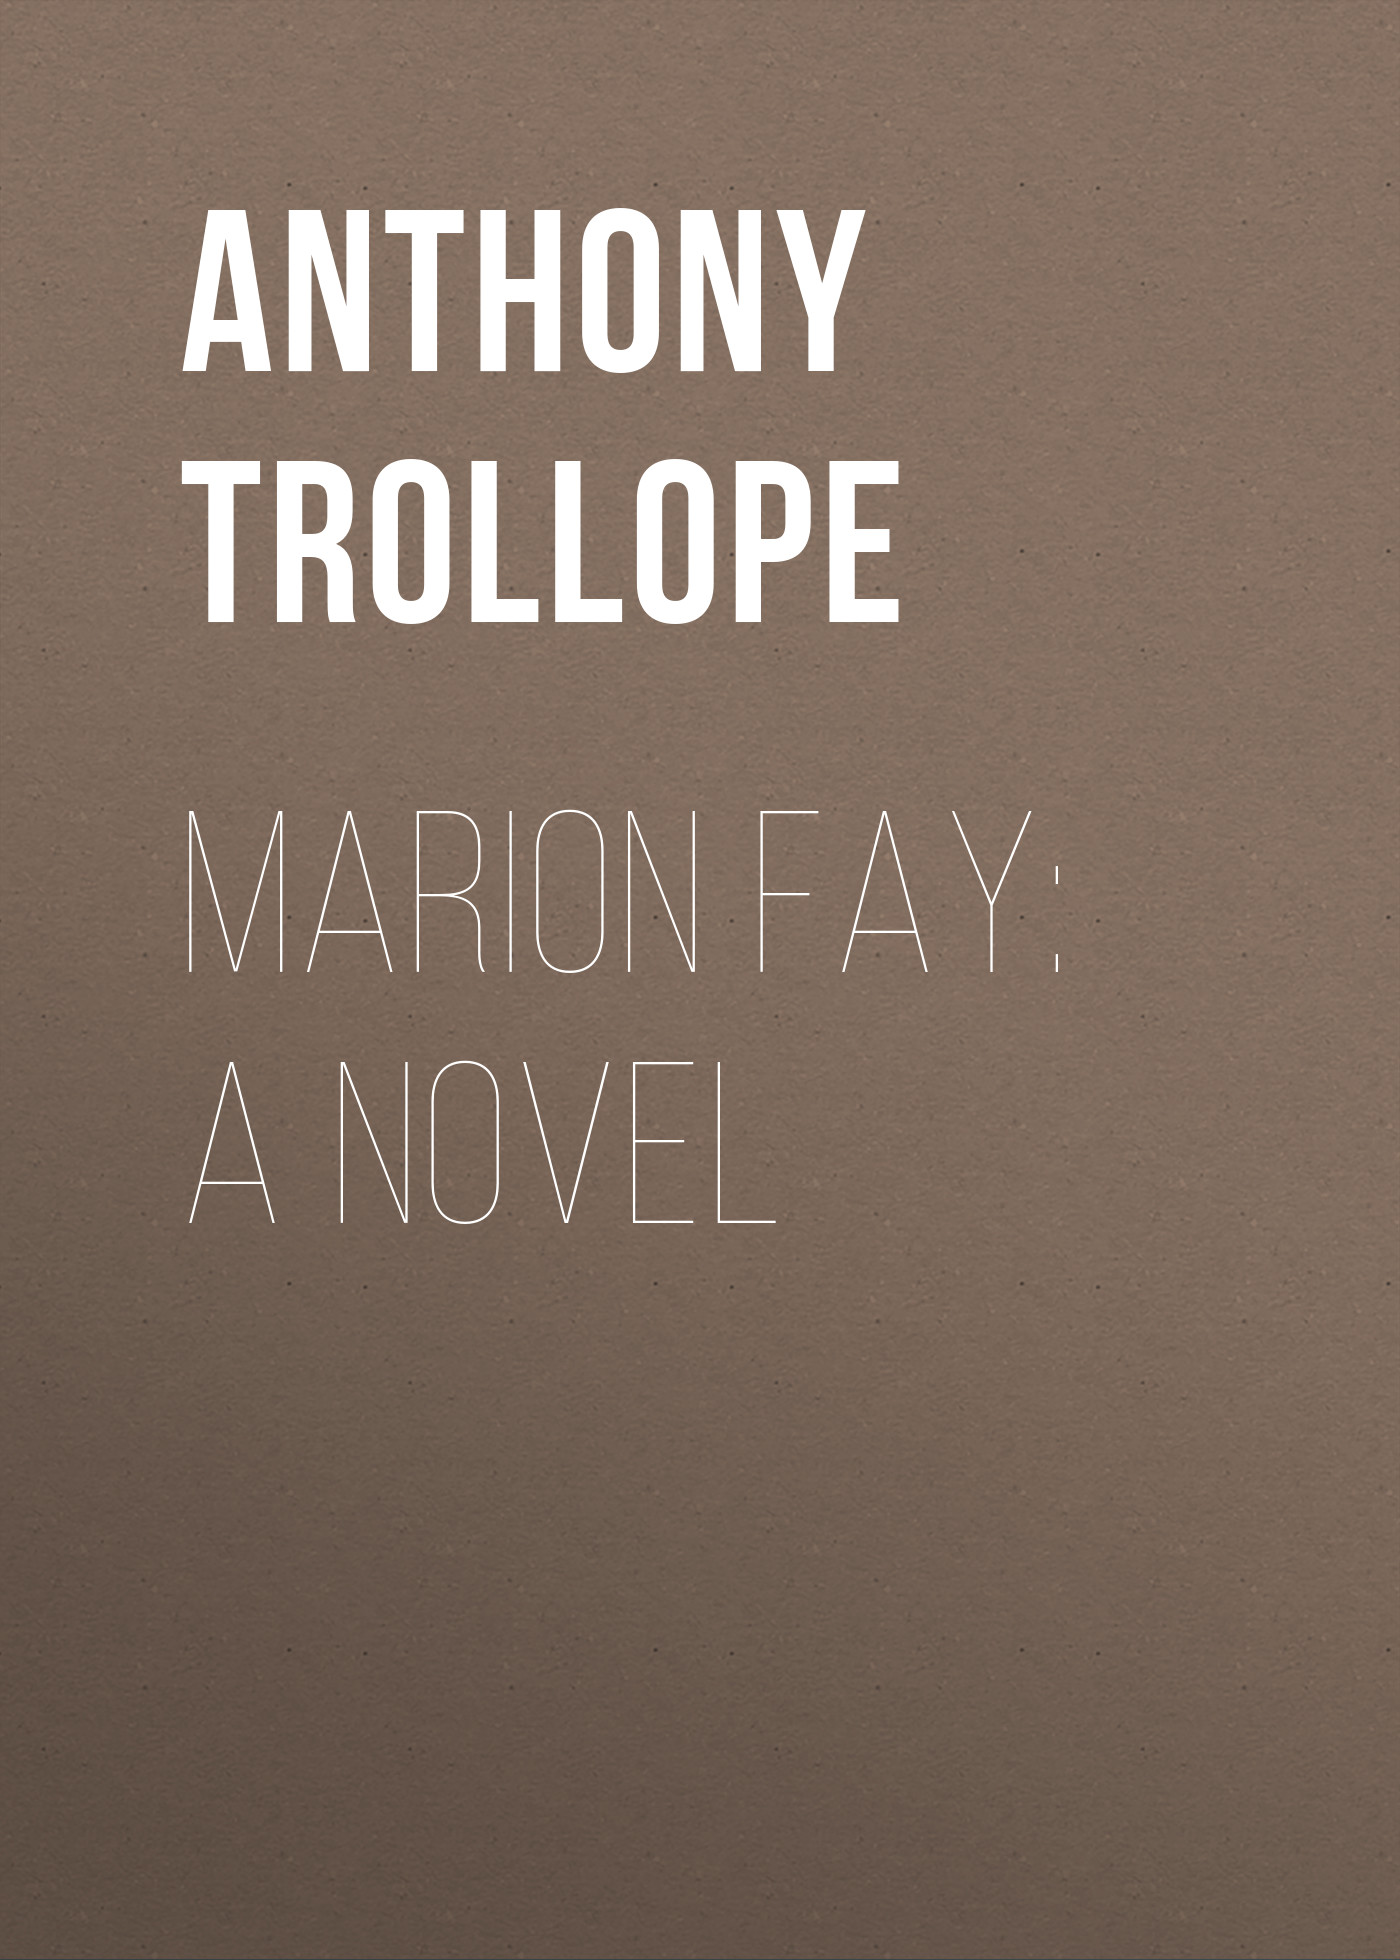 Книга Marion Fay: A Novel из серии , созданная Anthony Trollope, может относится к жанру Зарубежная классика. Стоимость электронной книги Marion Fay: A Novel с идентификатором 23155291 составляет 5.99 руб.